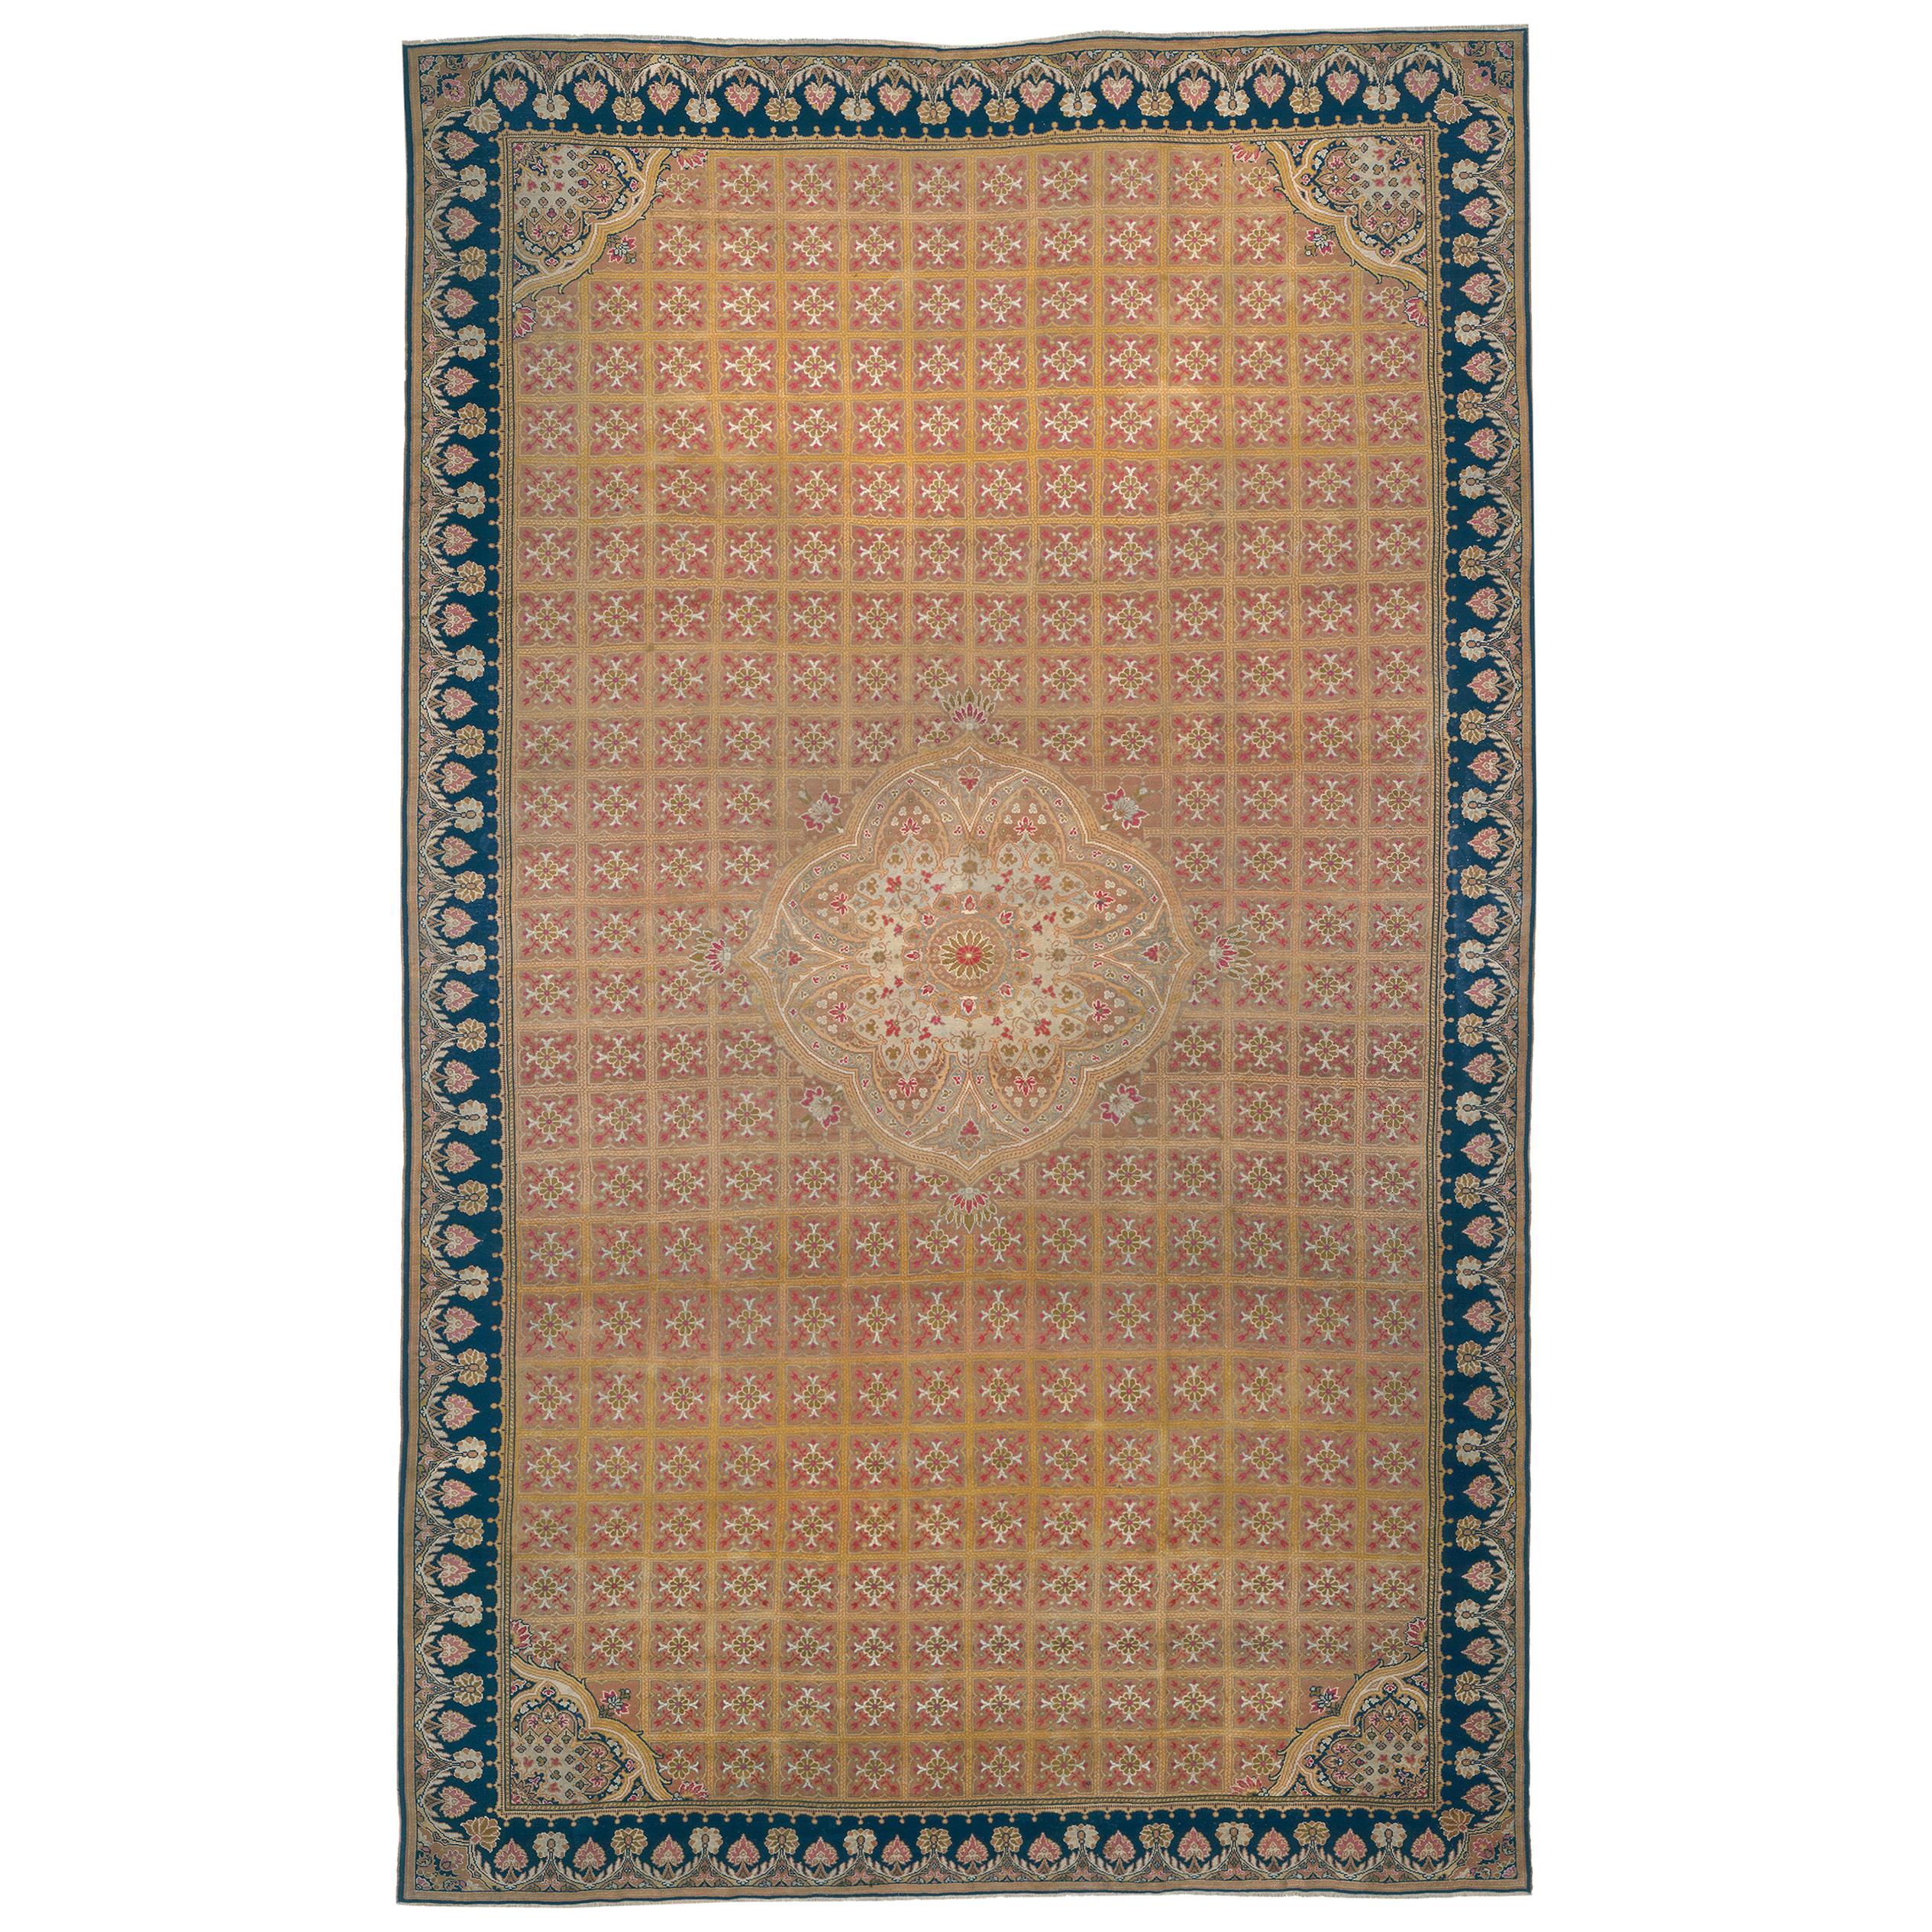 Englischer Axminster-Teppich aus der Mitte des 19. Jahrhunderts